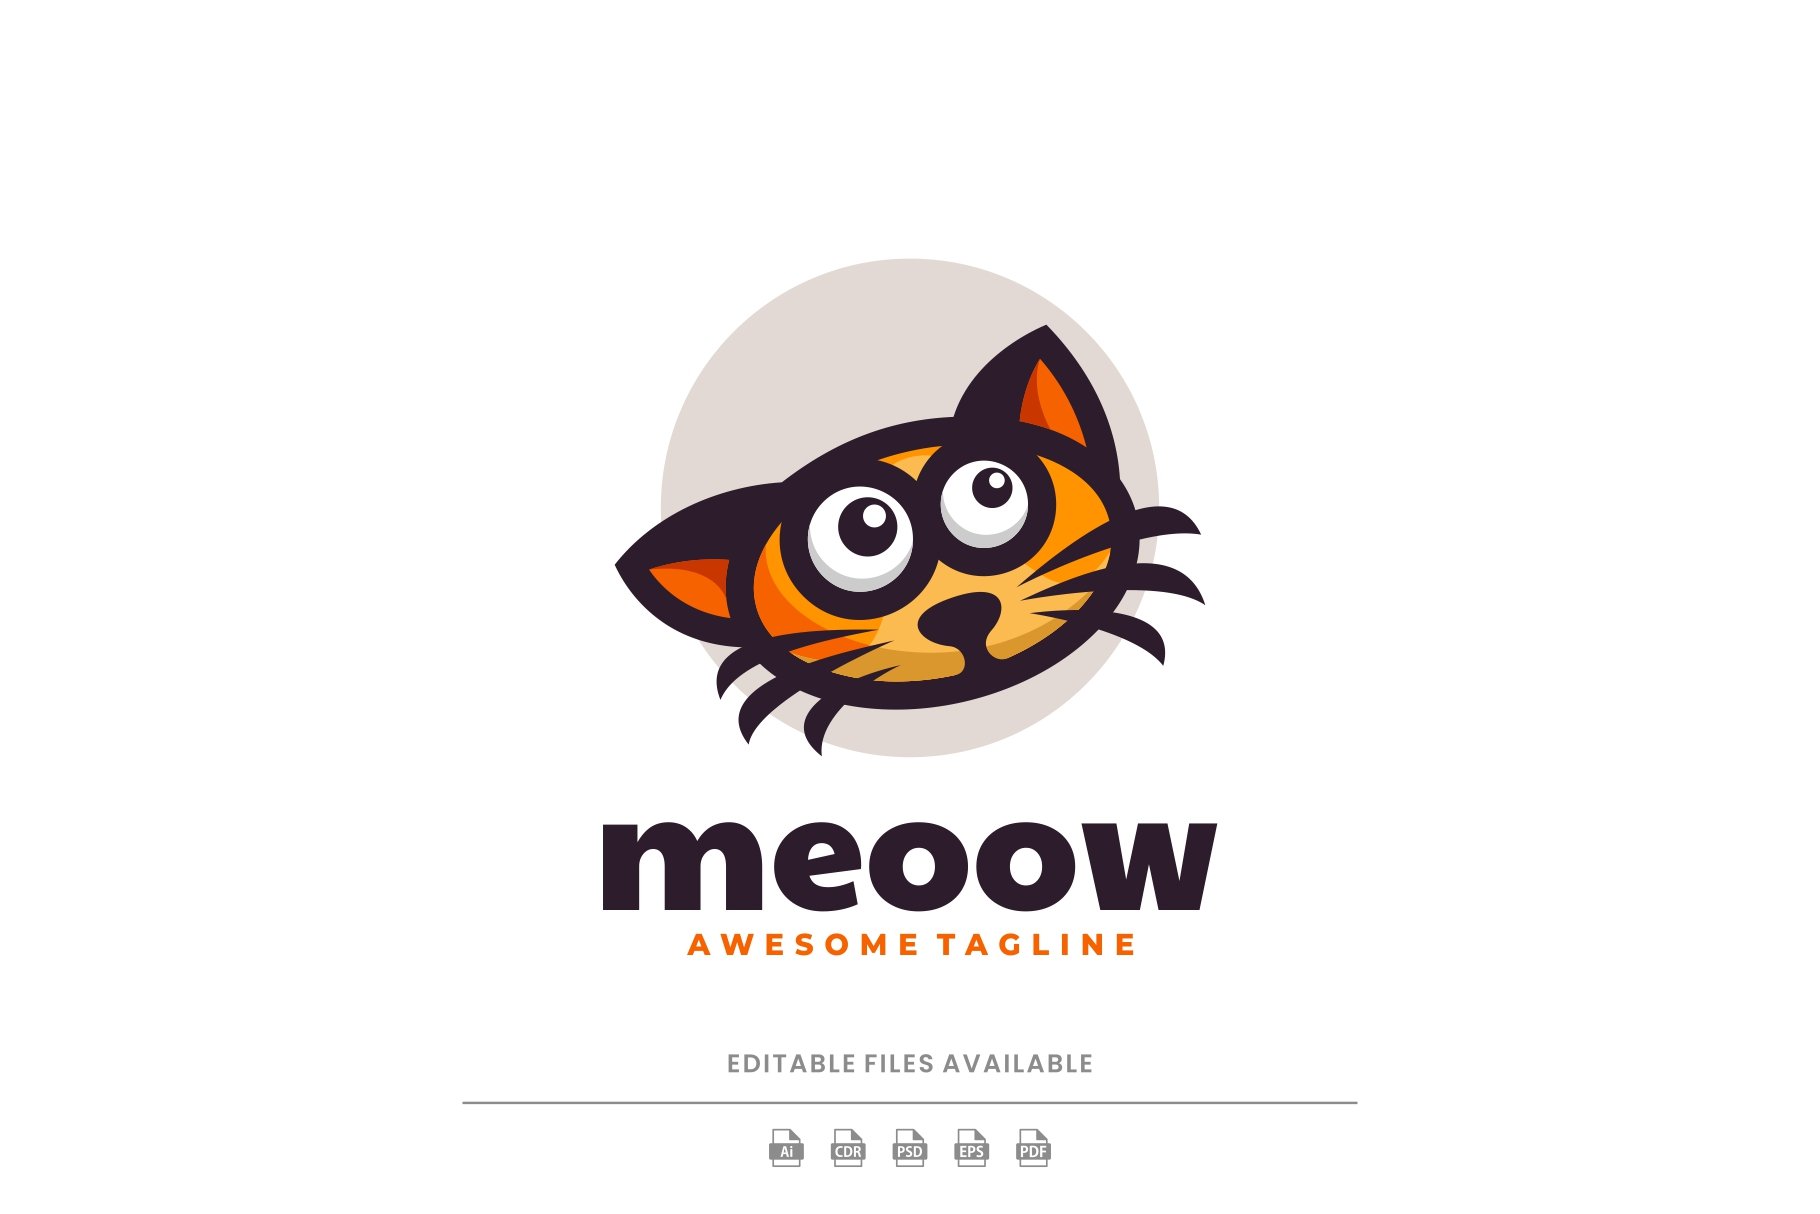 Meow Cat Cartoon Logo cover image.